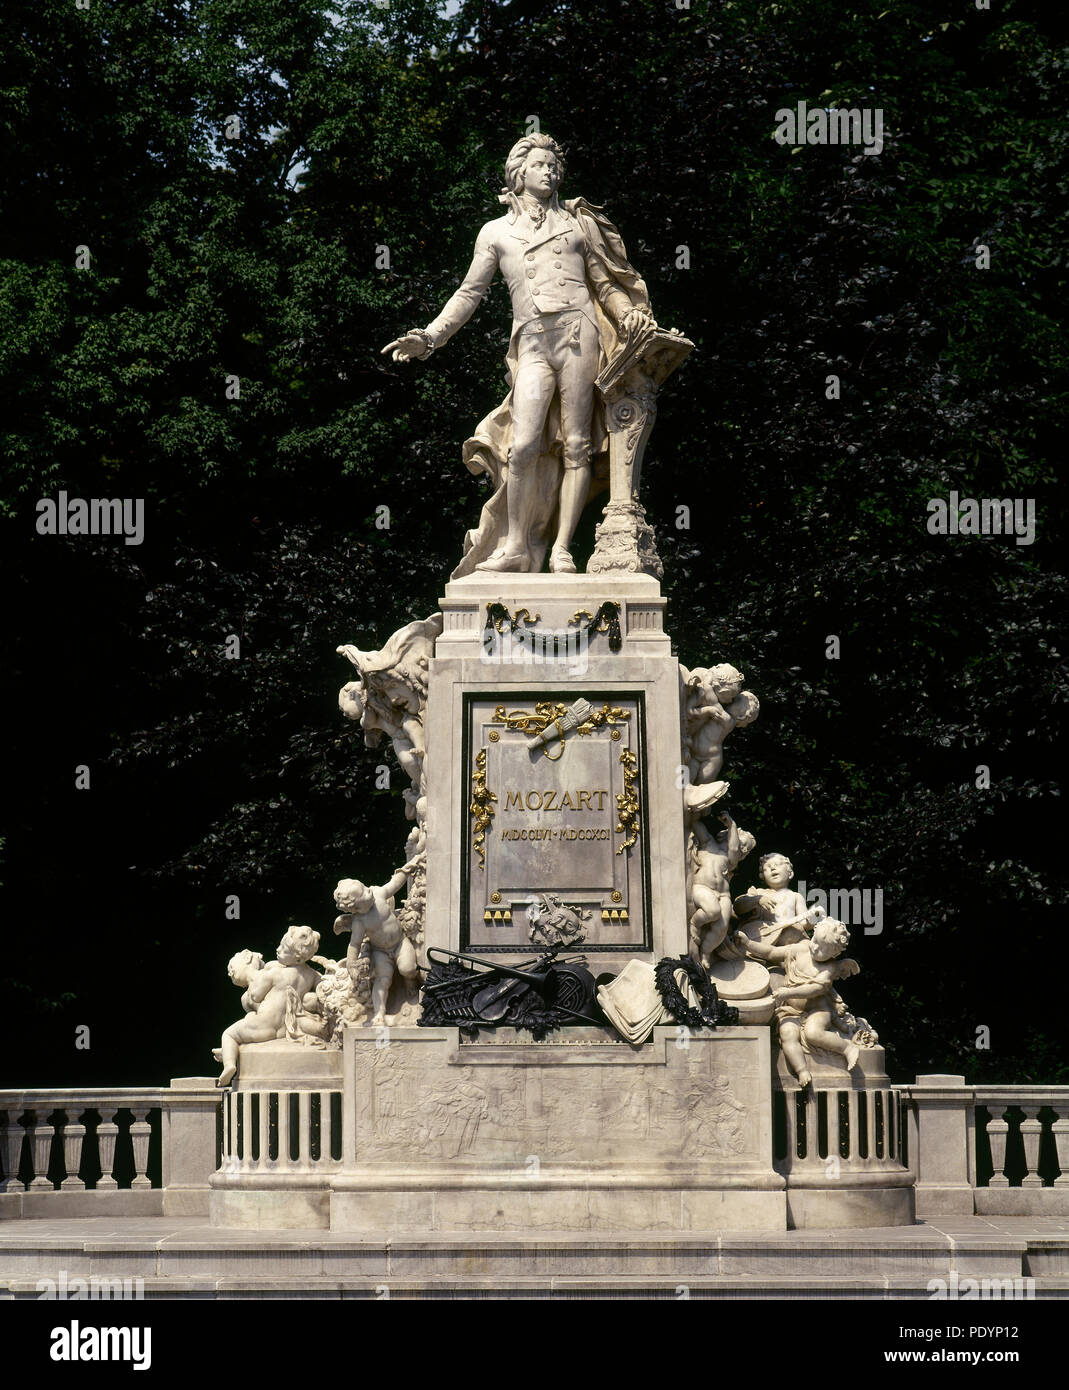 Wolfgang Amadeus Mozart (1756-1791). Compositeur autrichien. Monument par Viktor Tilgner (1844-1896). Burggarten. Vienne, Autriche. Banque D'Images